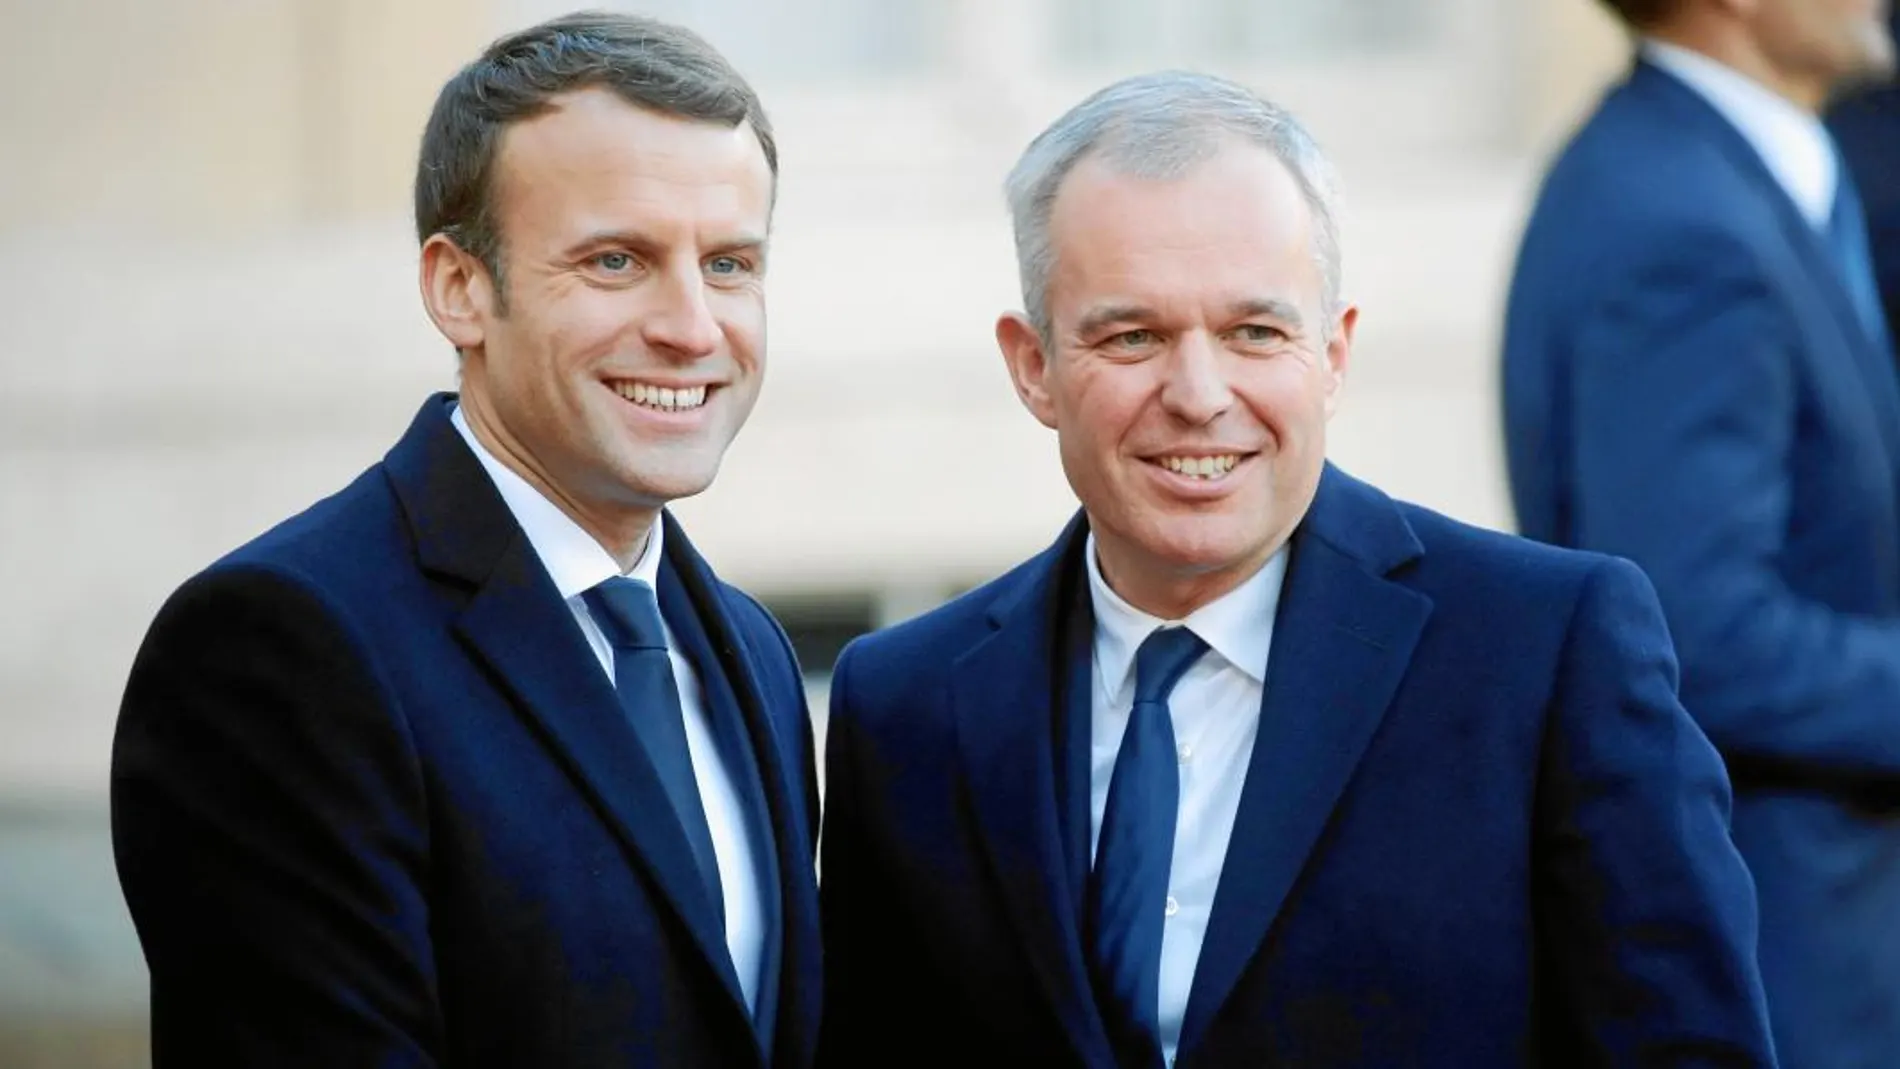 El hasta ahora presidente de la Asamblea Nacional francesa, François de Rugy, se hará cargo de la cartera de Transición Energética tras la dimisión del televisivo Nicolas Hulot / Ap